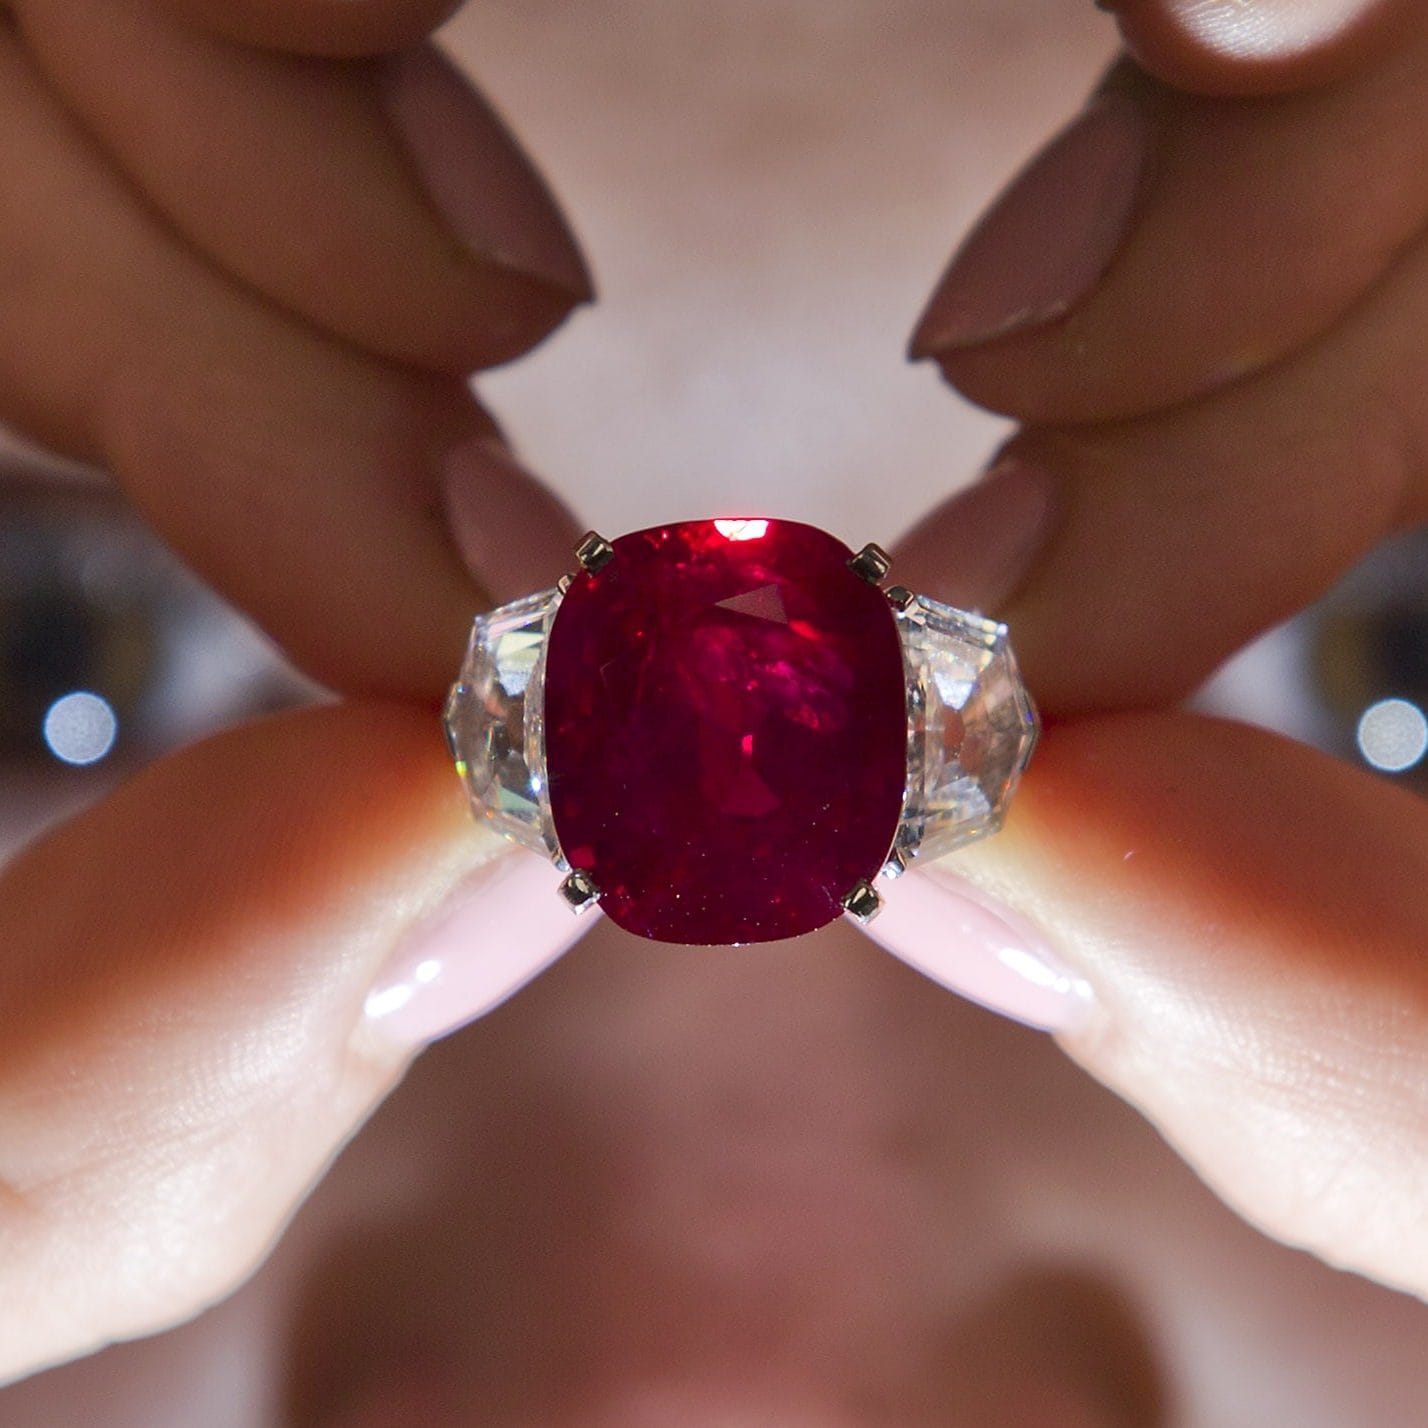 Cartier Sunrise Rubínový prsteň Tento krvavočervený drahokam, ktorý na aukcii v roku 2019 dosiahol úctyhodnú cenu 19,6 milióna libier, je skutočne jedinečný a unikátny. S nádherným orámovaním z diamantov, ktoré sprevádza obrovský a pútavý drahokam. V tomto prípade je to vzácnosť tohto kúsku a krásny drahokam, čo vedie k takejto významnej cene - tieto druhy rubínov sú také vyhľadávané, že ich cena bude pravdepodobne časom tiež len rásť.